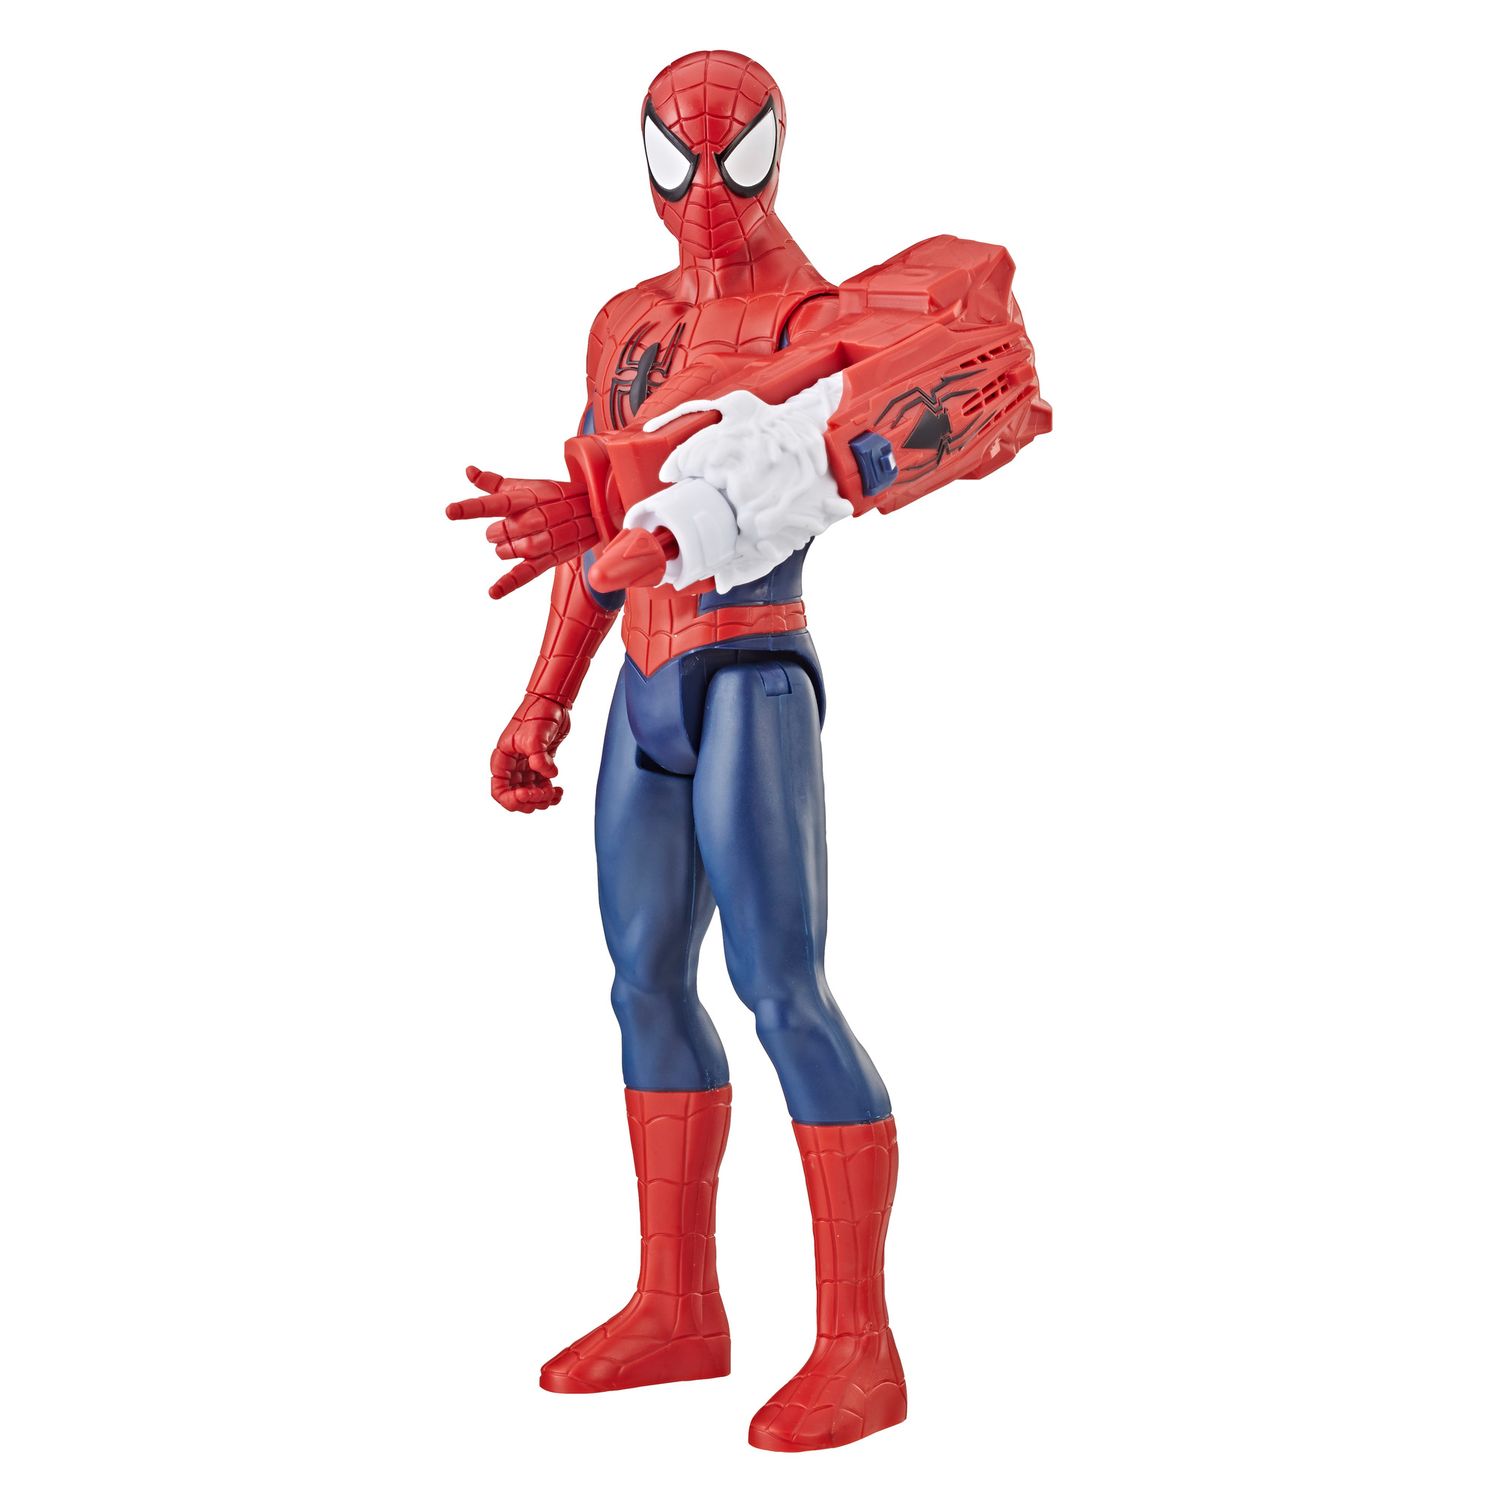 spider man titan hero power fx